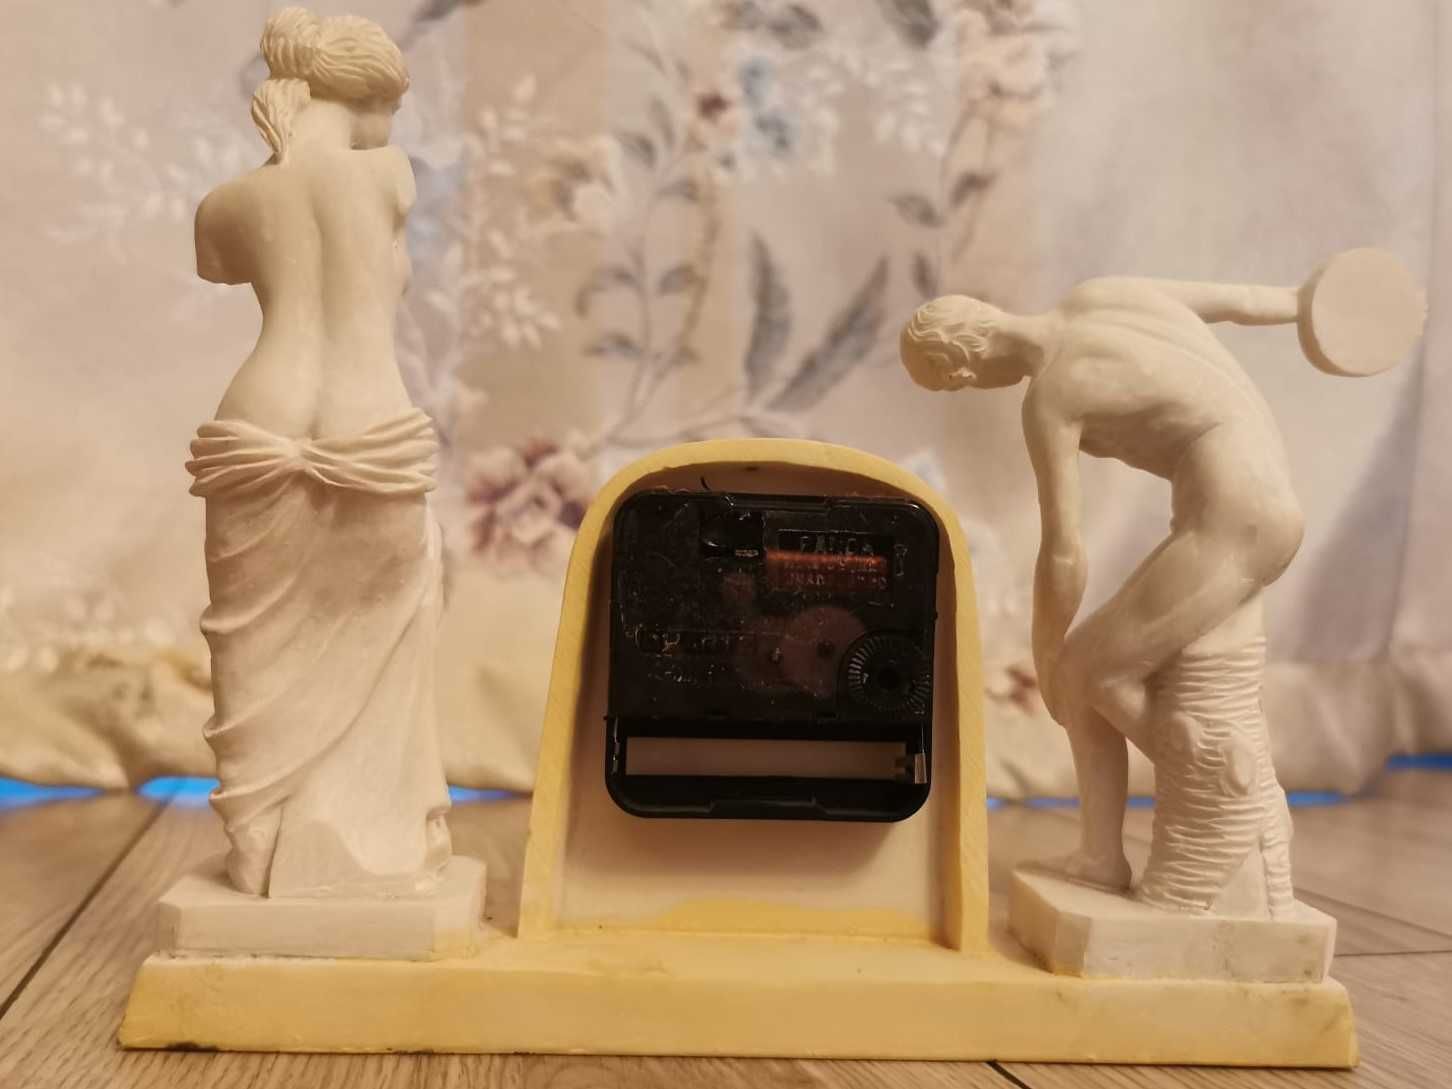 Bibelou ceas masă statui grecești Venus din Milo /Discobolul lui Myron